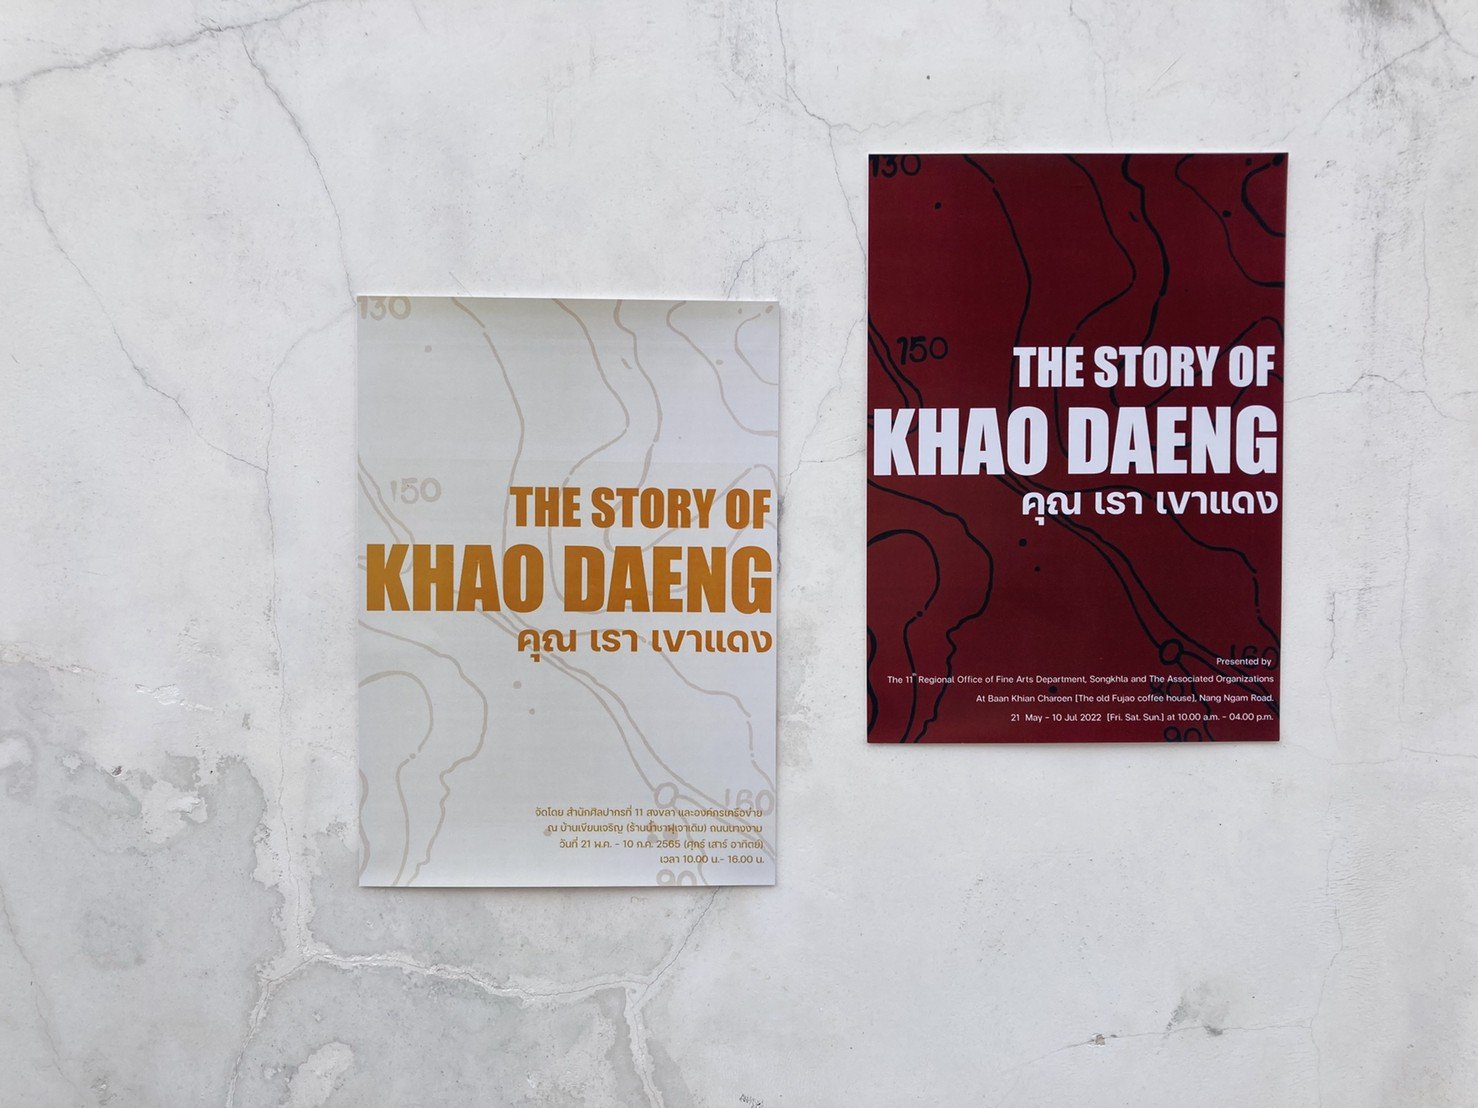 นิทรรศการ The story of khao daeng : คุณ เรา เขาแดง